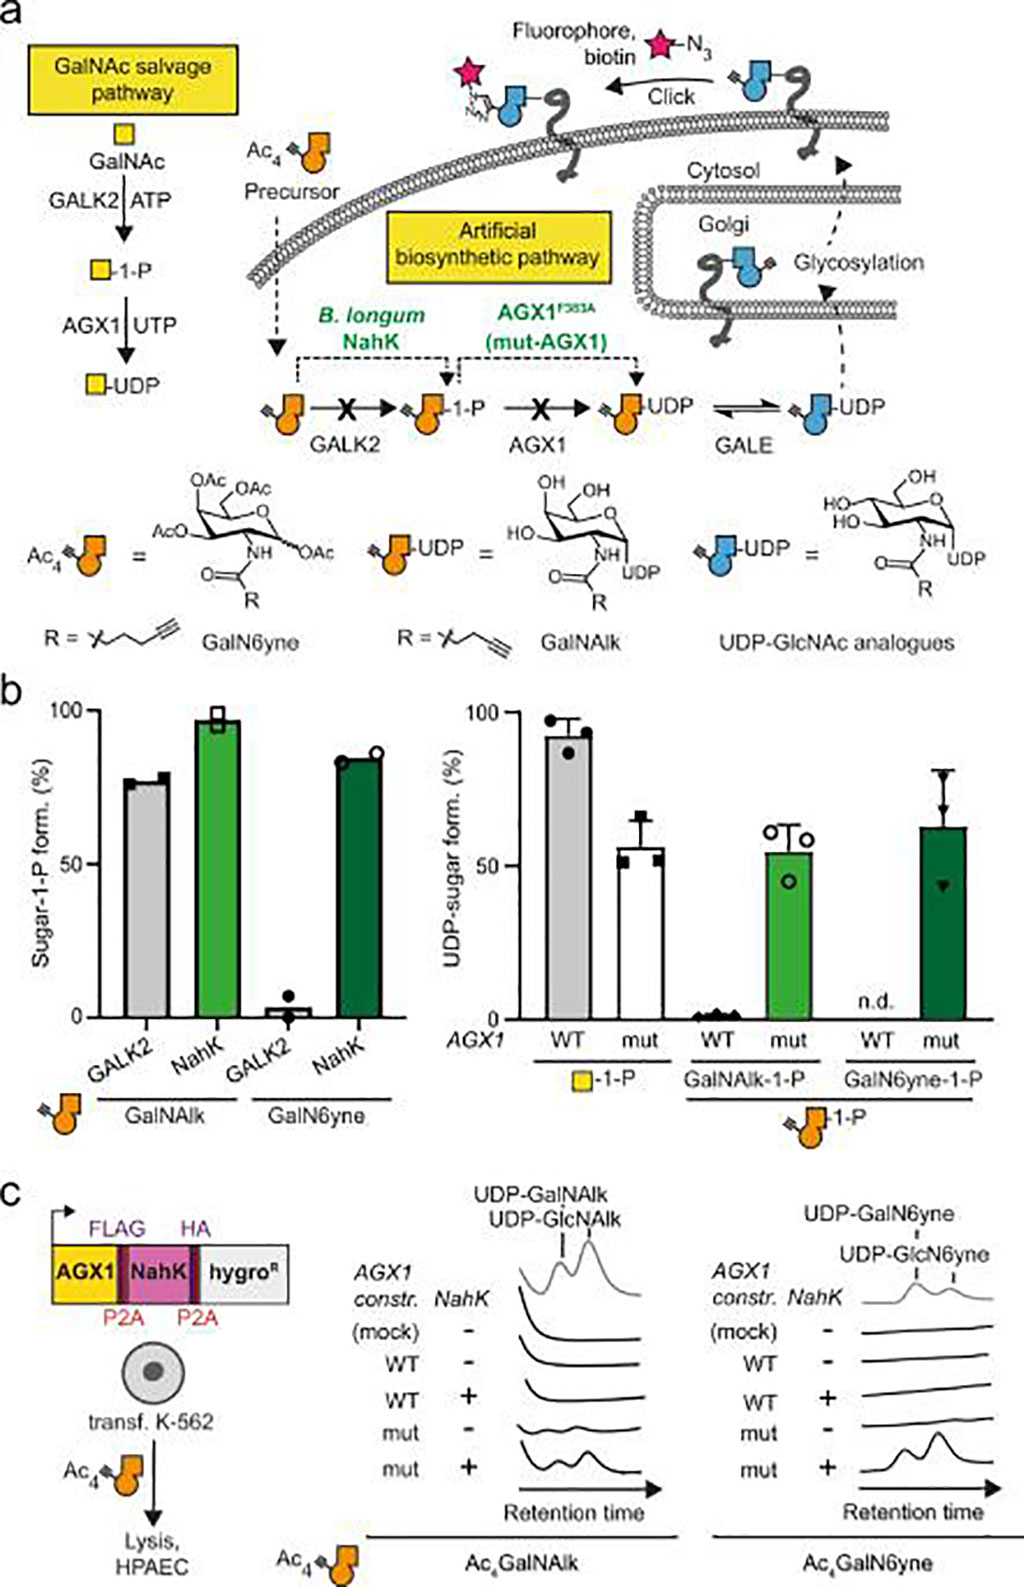 Imagen: Desarrollo de una vía biosintética artificial para análogos de UDP-GalNAc/GlcNAc marcados químicamente (Fotografía cortesía de Benjamín Schumann, PhD)